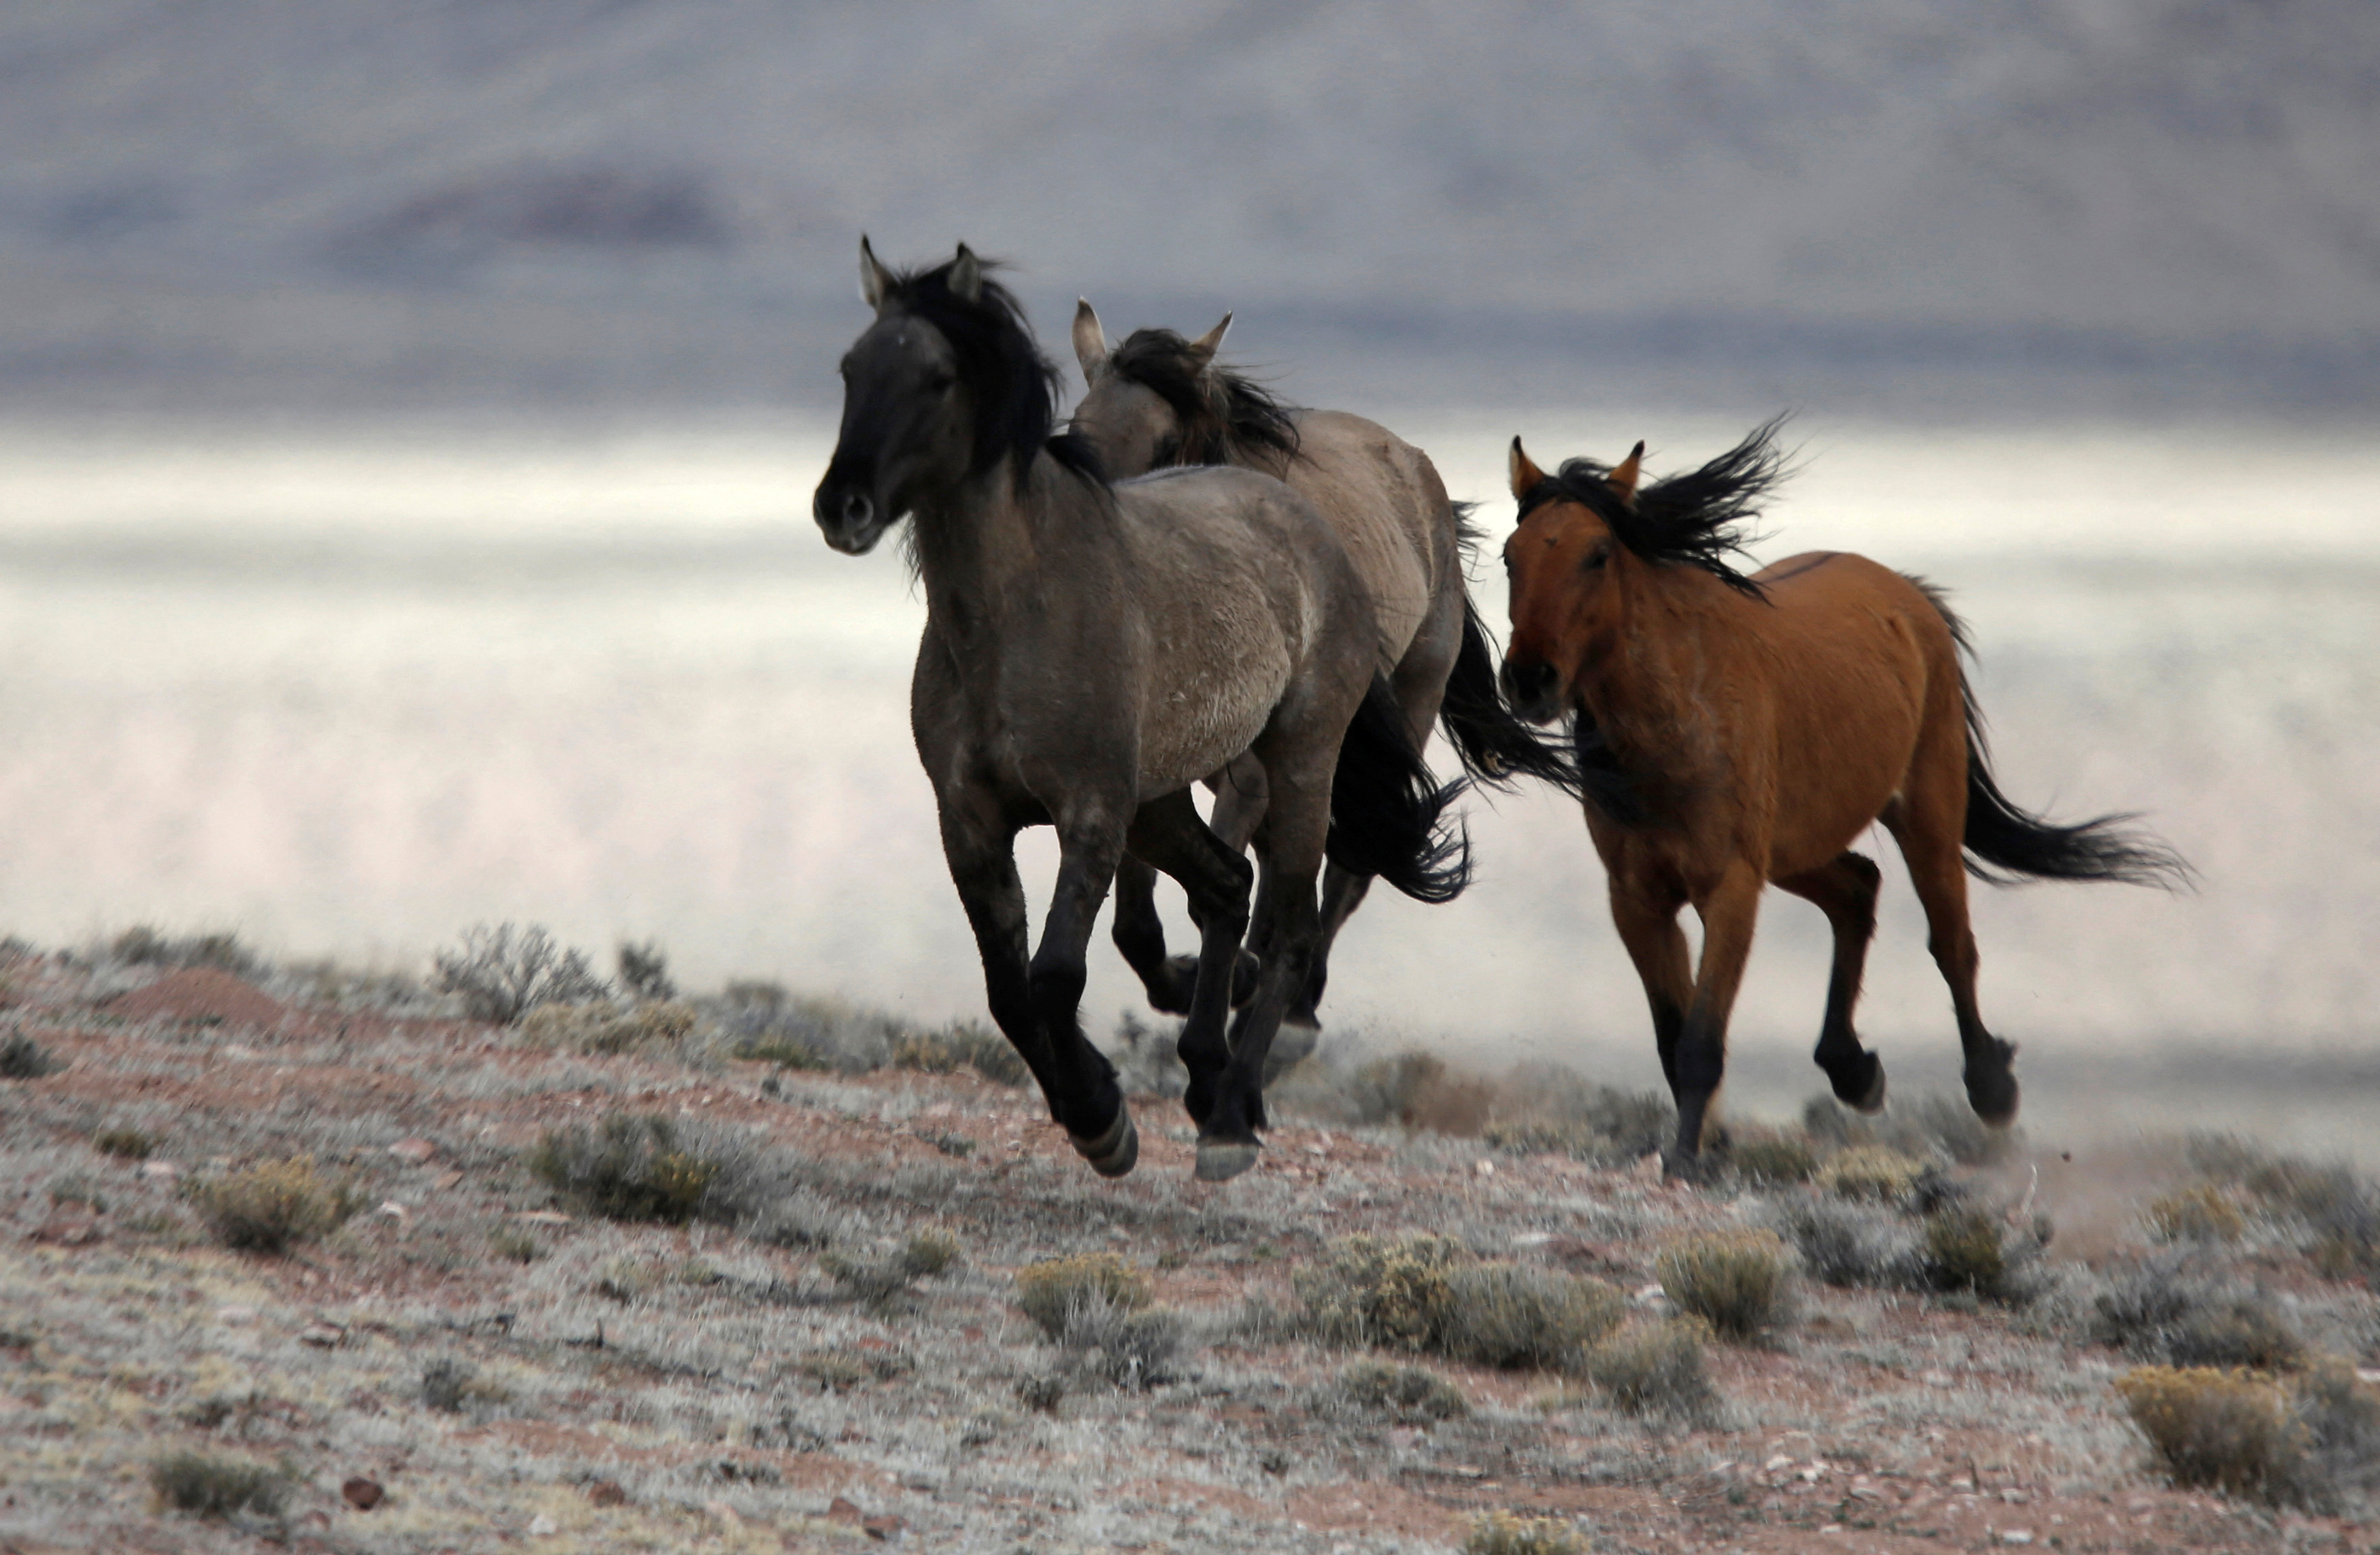 Several wild horses escape the Bureau of Land Management (BLM) gather trap south of Garrison, Utah